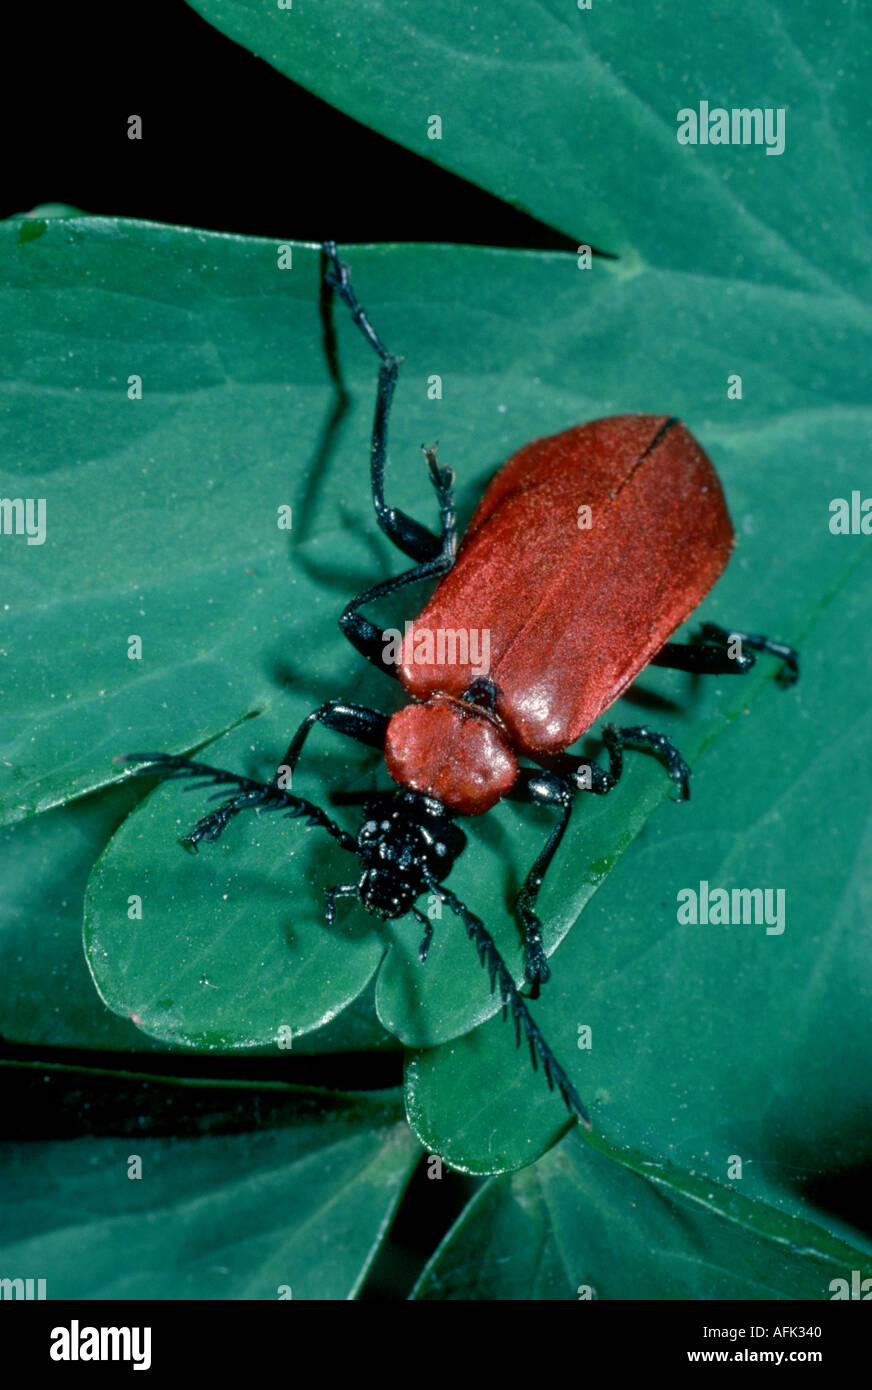 Cardinal beetle Stock Photo